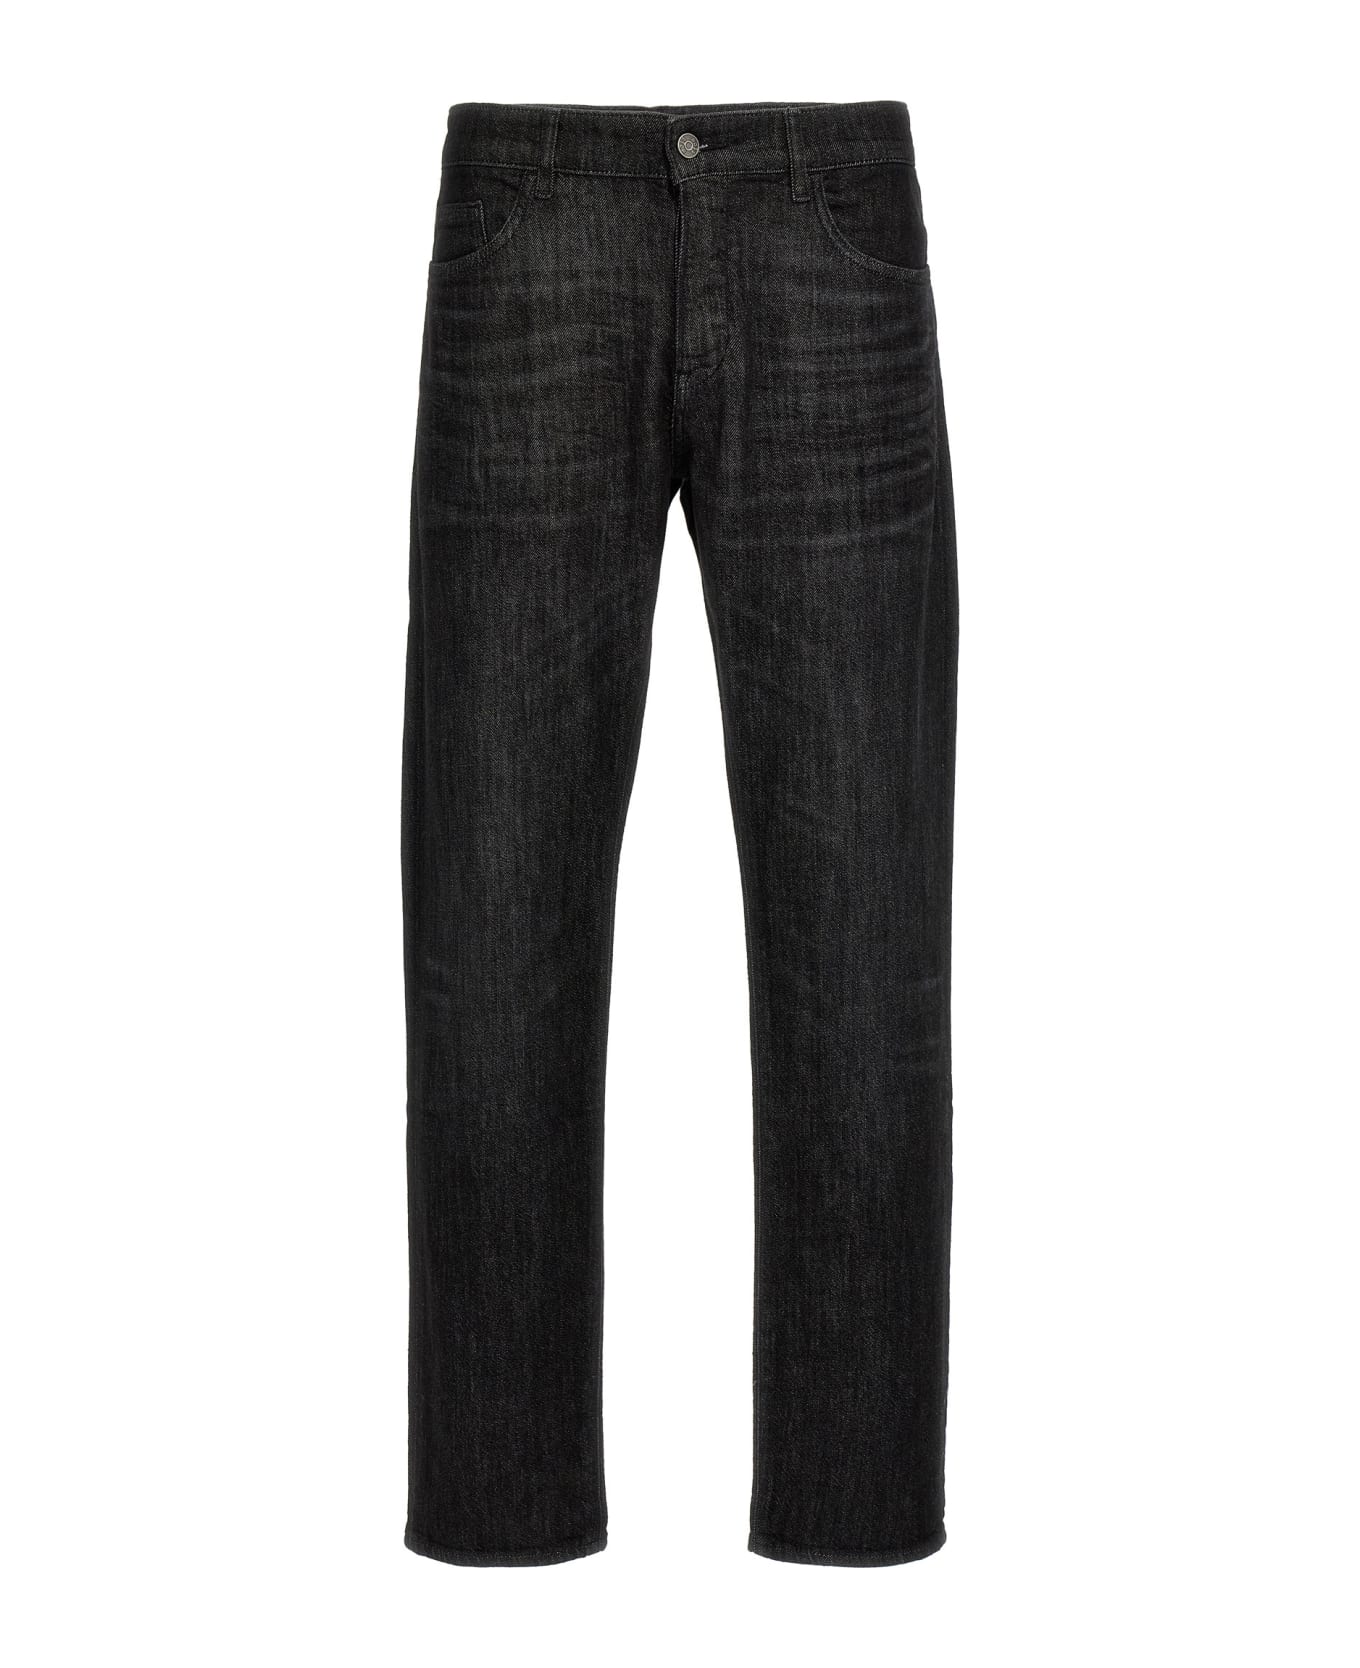 Hugo Boss 'delaware' Jeans - Black  